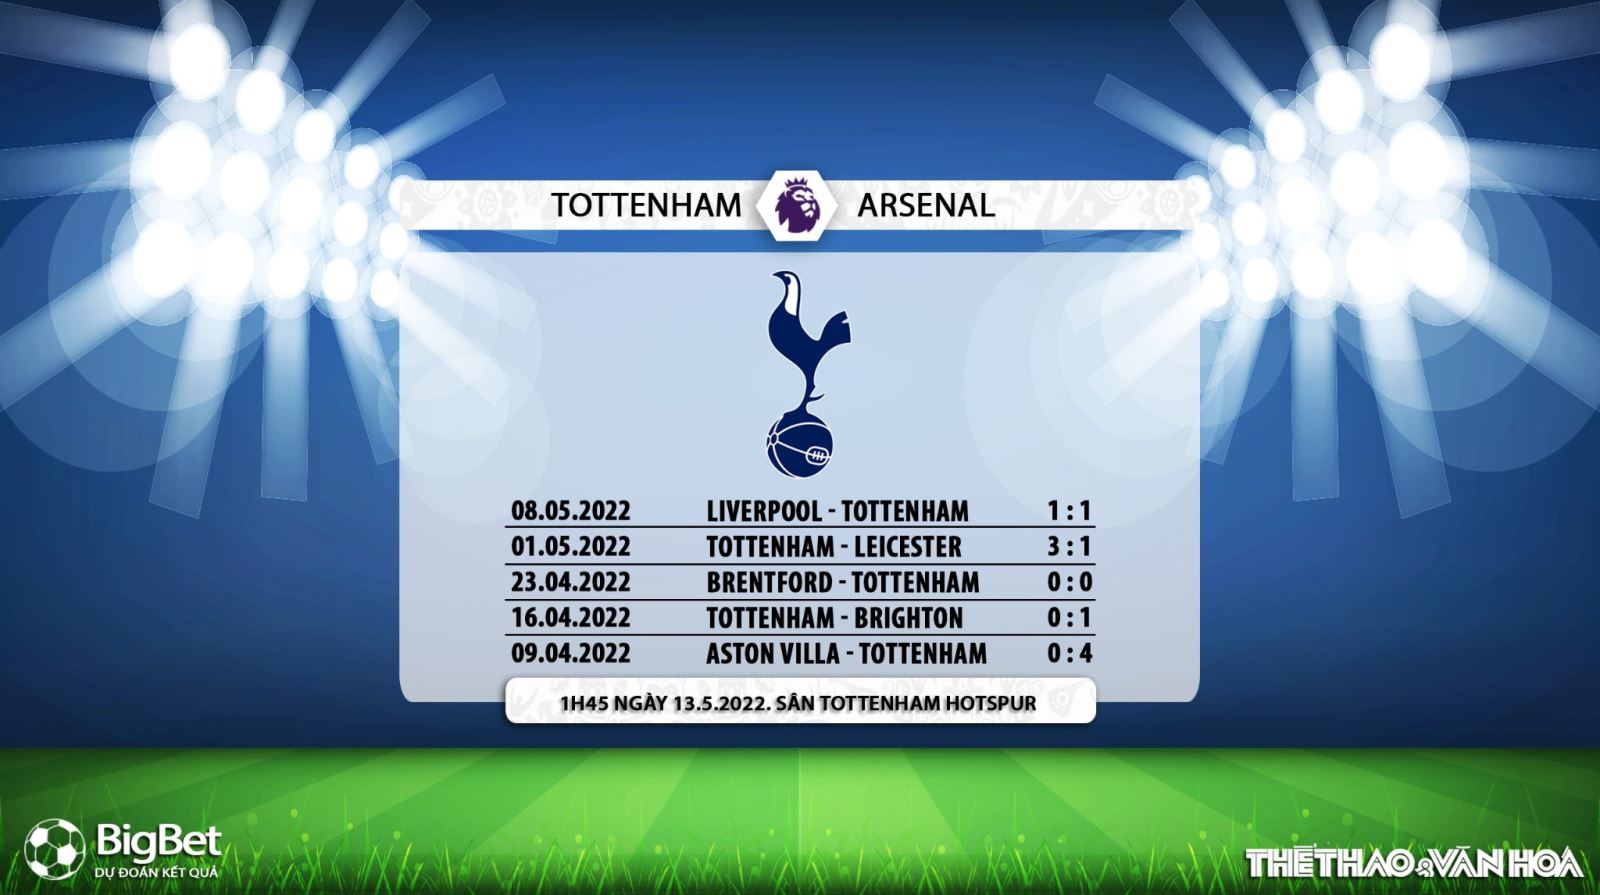 nhận định bóng đá Tottenham vs Arsenal, nhận định kết quả, Tottenham vs Arsenal, nhận định bóng đá, Tottenham, Arsenal, keo nha cai, dự đoán bóng đá, Ngoại hạng Anh, bóng đá Anh